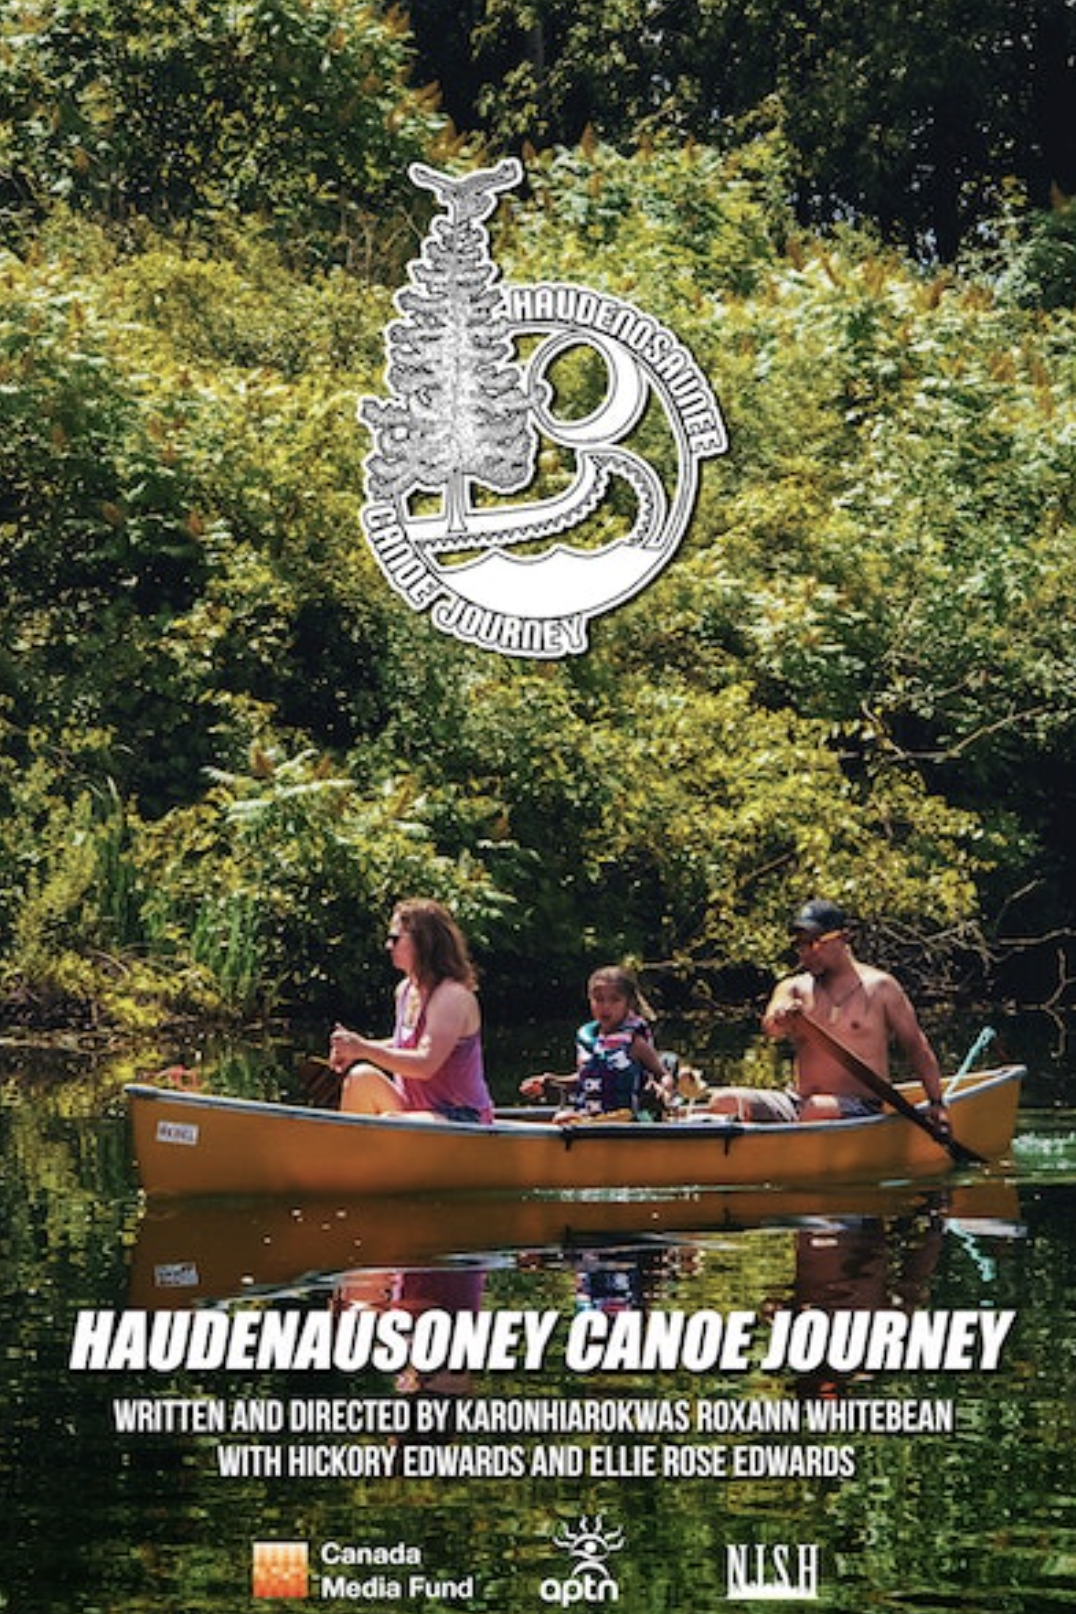 Haudenausoney Canoe Journey